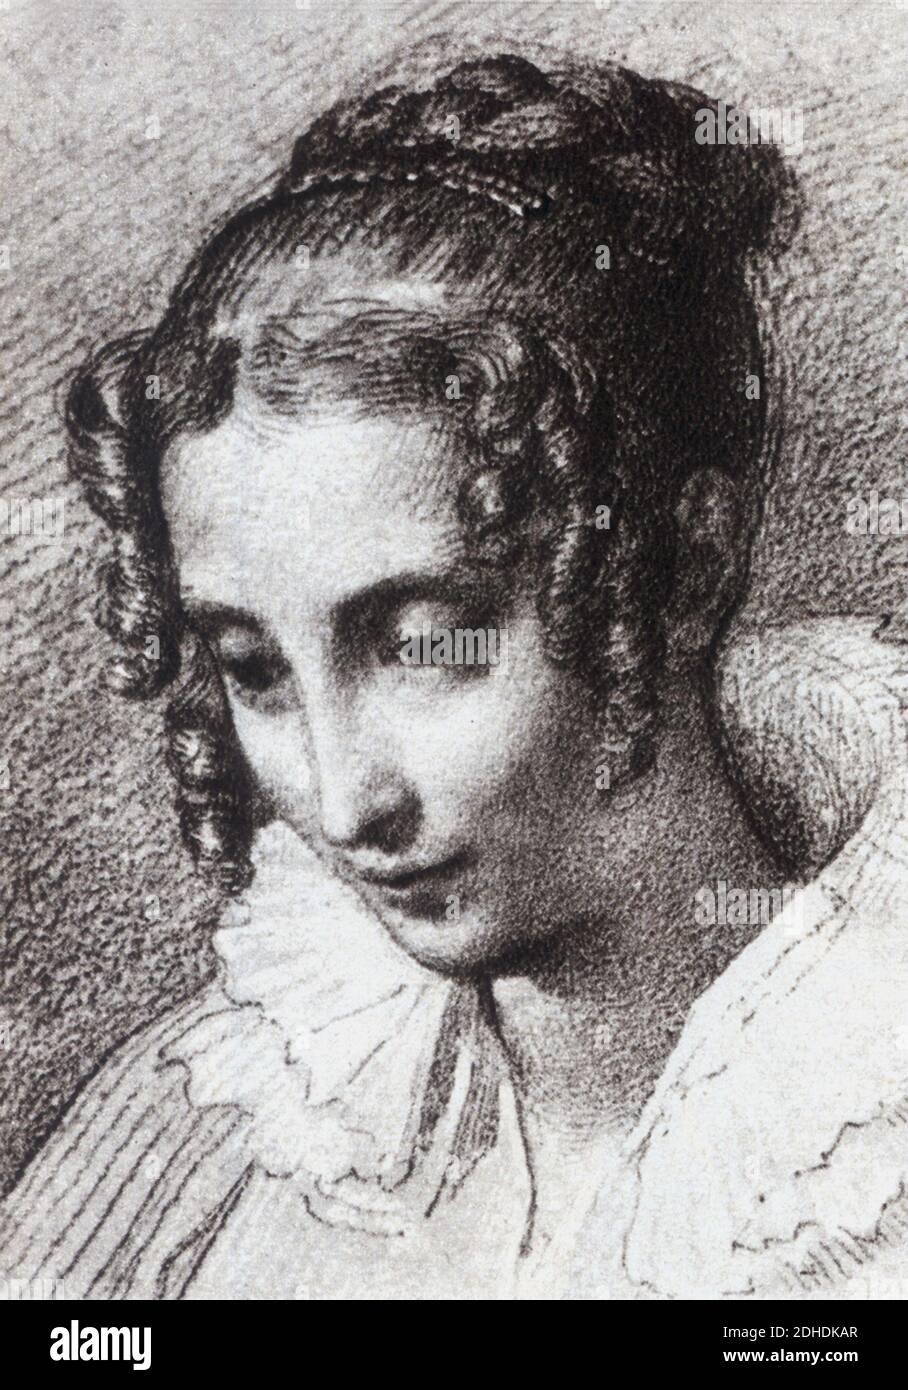 La comtesse TERESA BORRI STAMPA ( 1807 - 1861 ) , la 2ème femme ( 1837 ) du plus célèbre écrivain italien ALESSANDRO MANZONI ( 1785 - 1873 ) , auteur du livre ' I Promessi Sposi ' ( 1827 - 1842 ) - SCRITTORE - LETTERATO - LETTERATURA - LITTÉRATURE - portrait - ritratto - coletto - collier - boccoli - boucles --- Archivio GBB Banque D'Images